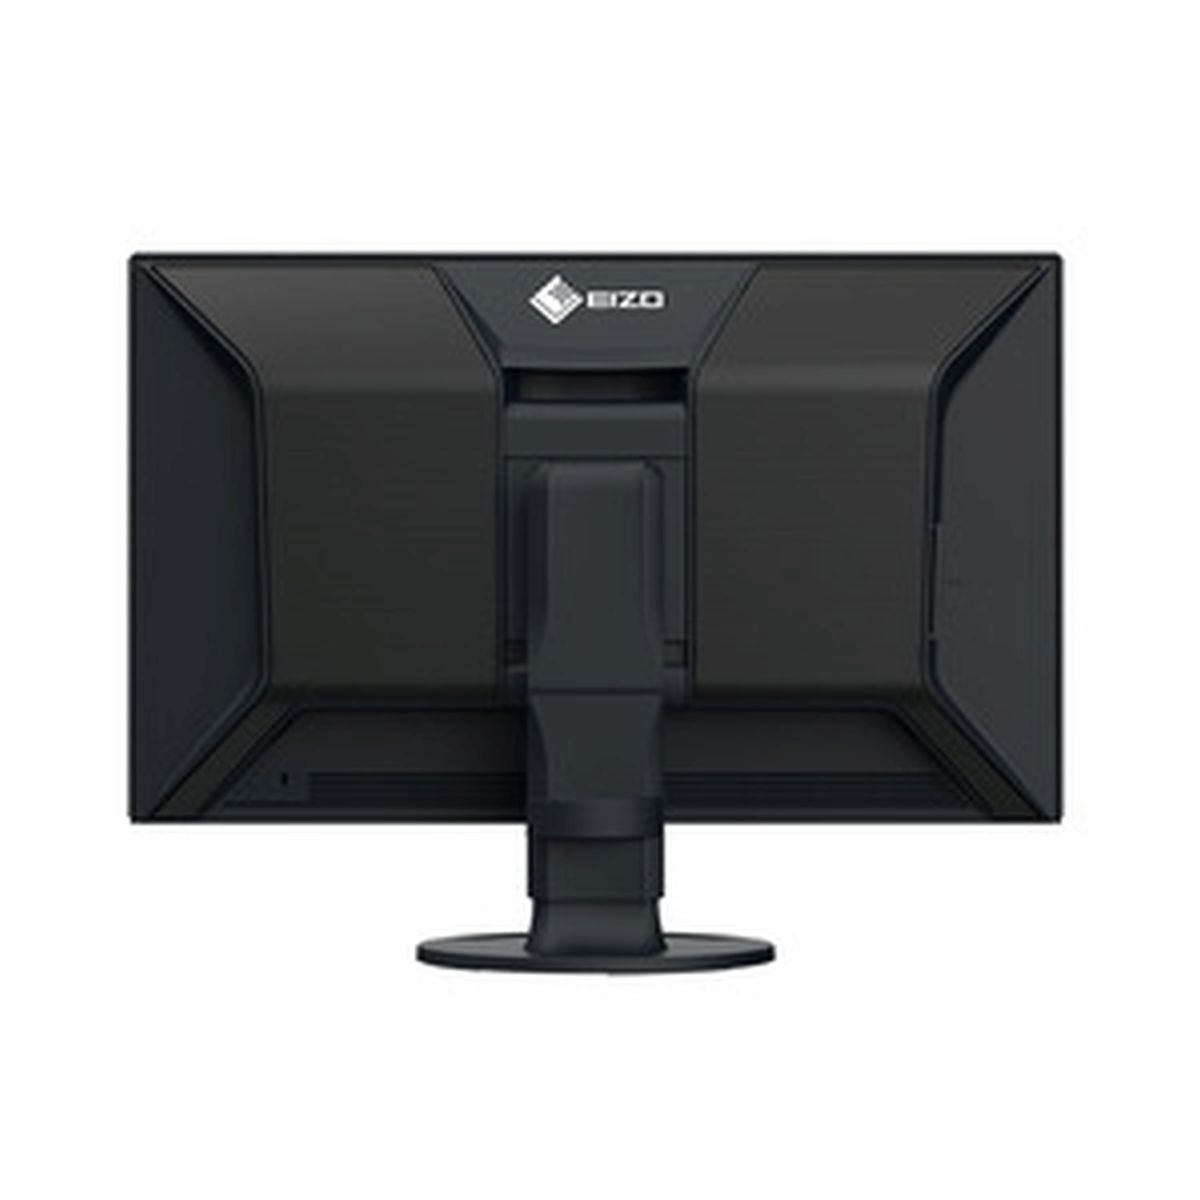 Eizo CG2700X 68,4 cm (27") schwarz ColorEdge Grafik-Monitor + Lichtschutz